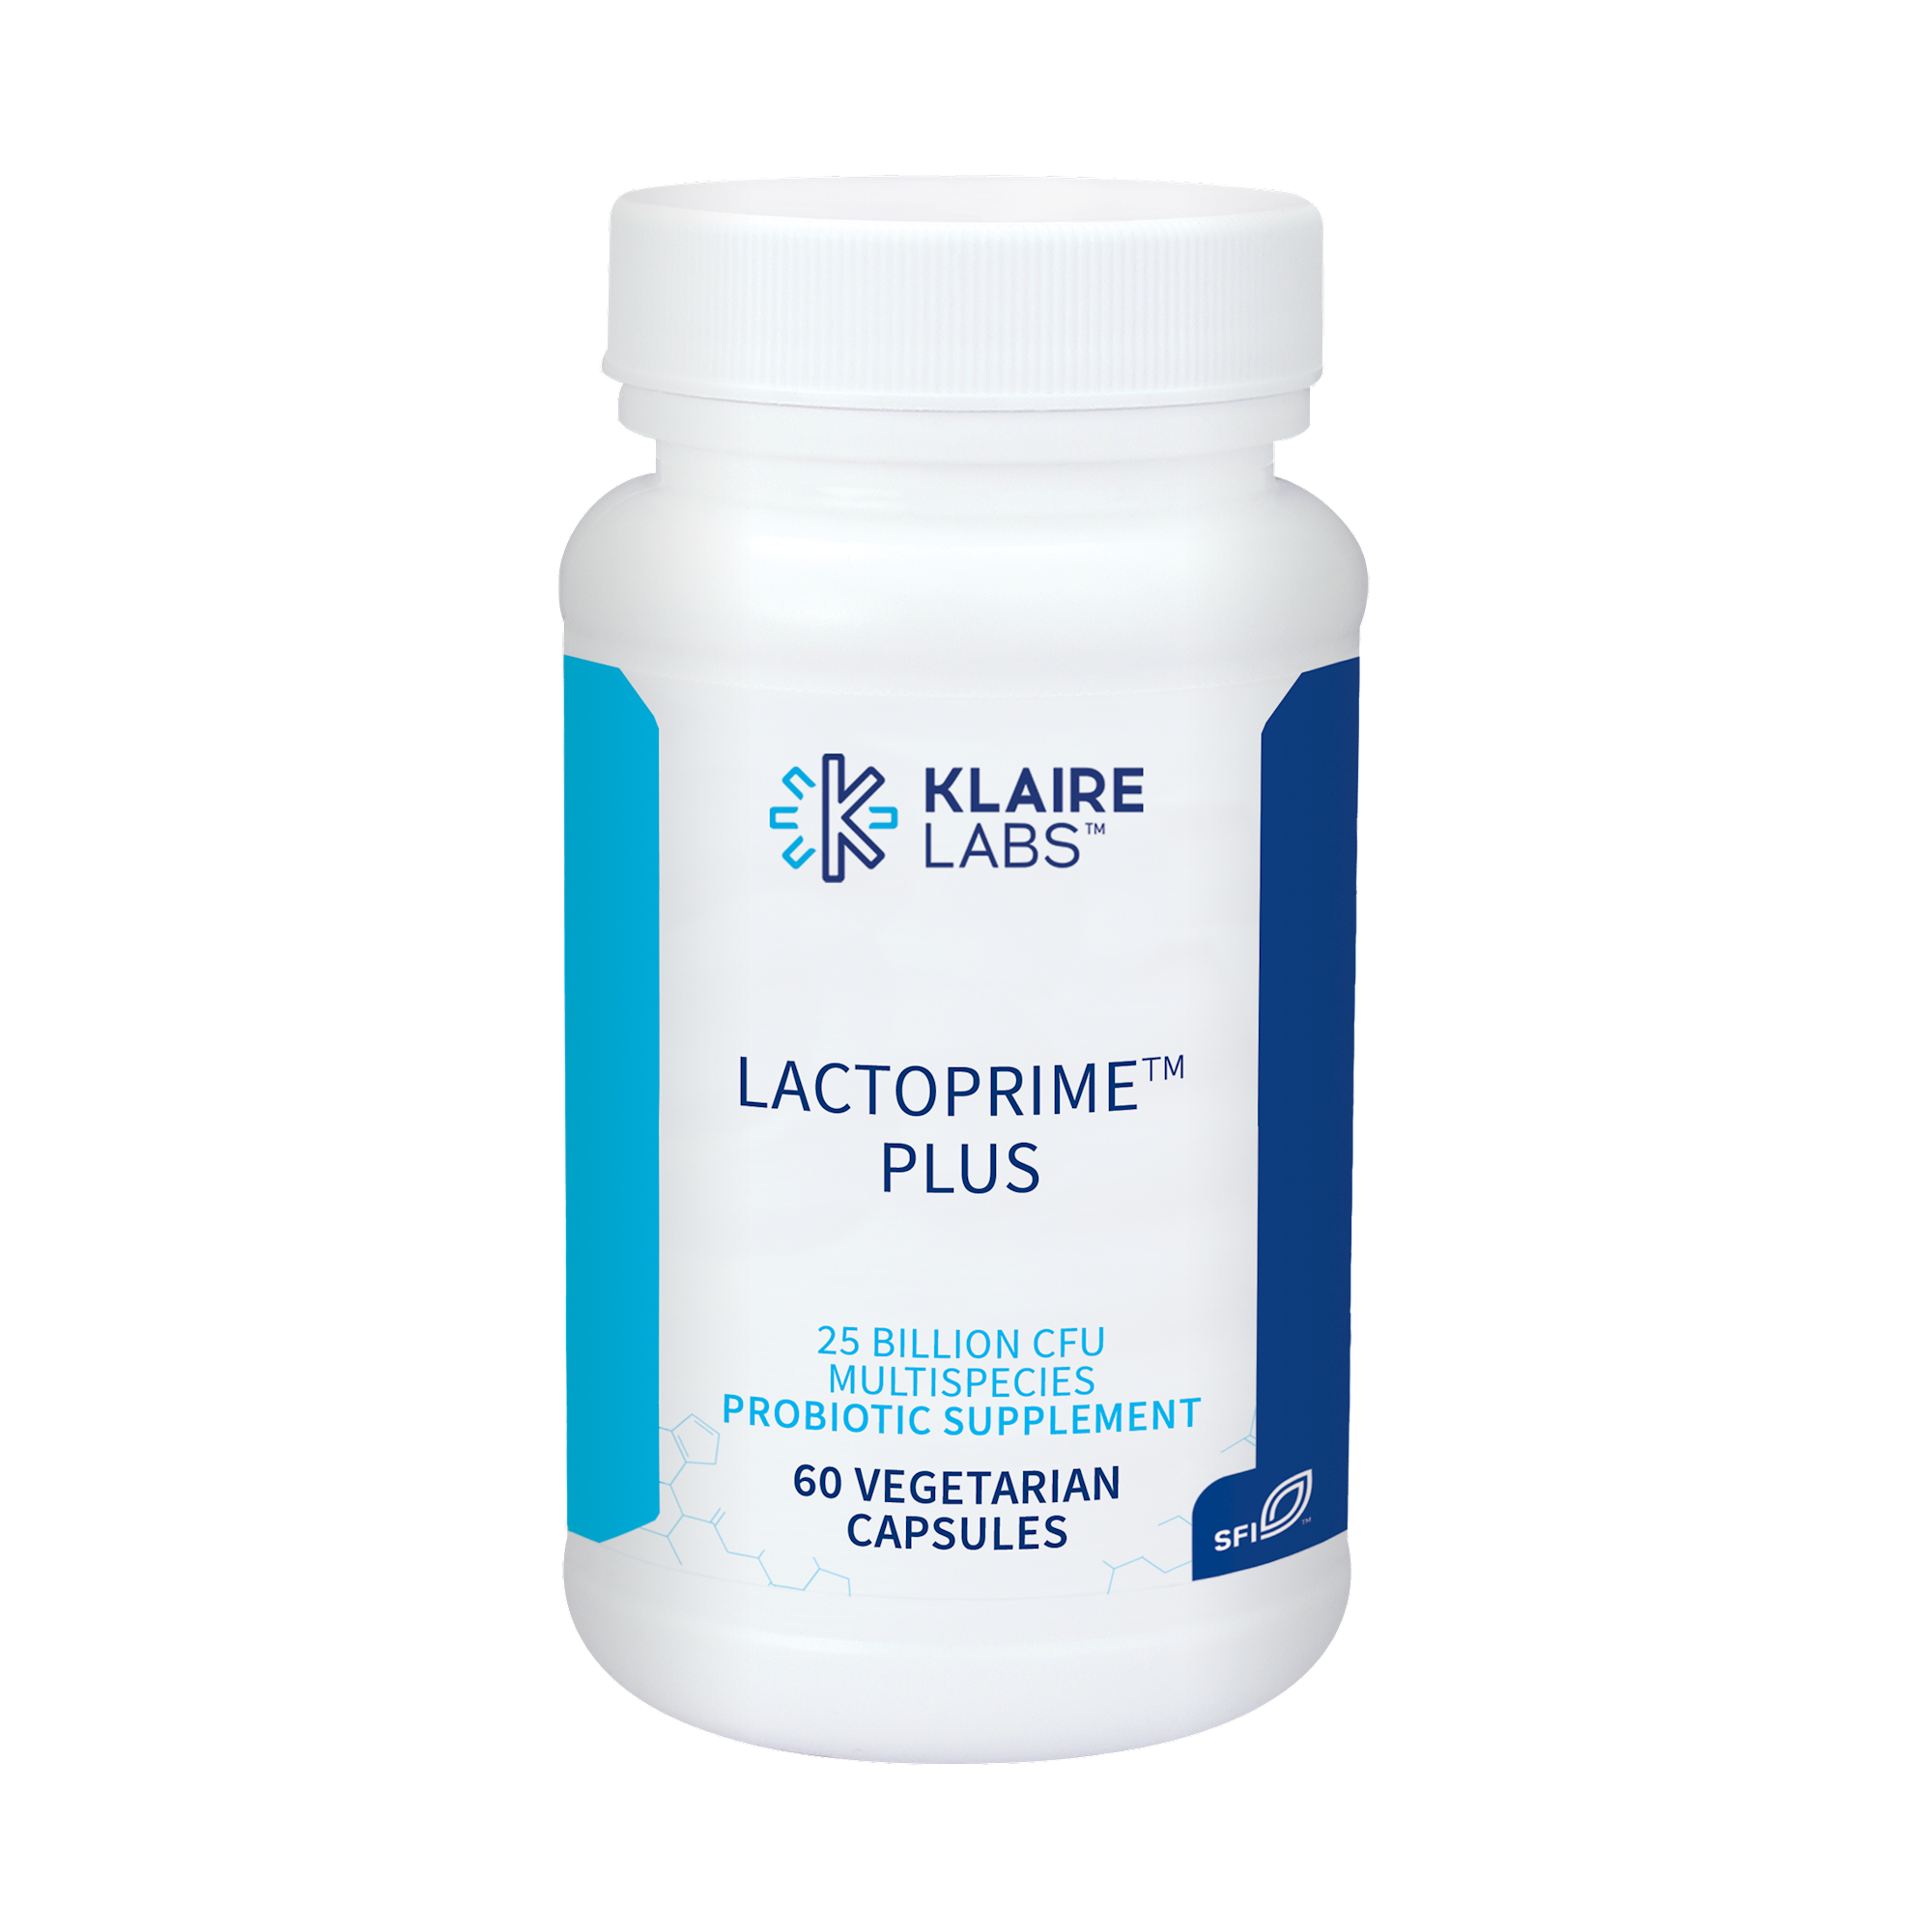 LactoPrime™ Plus